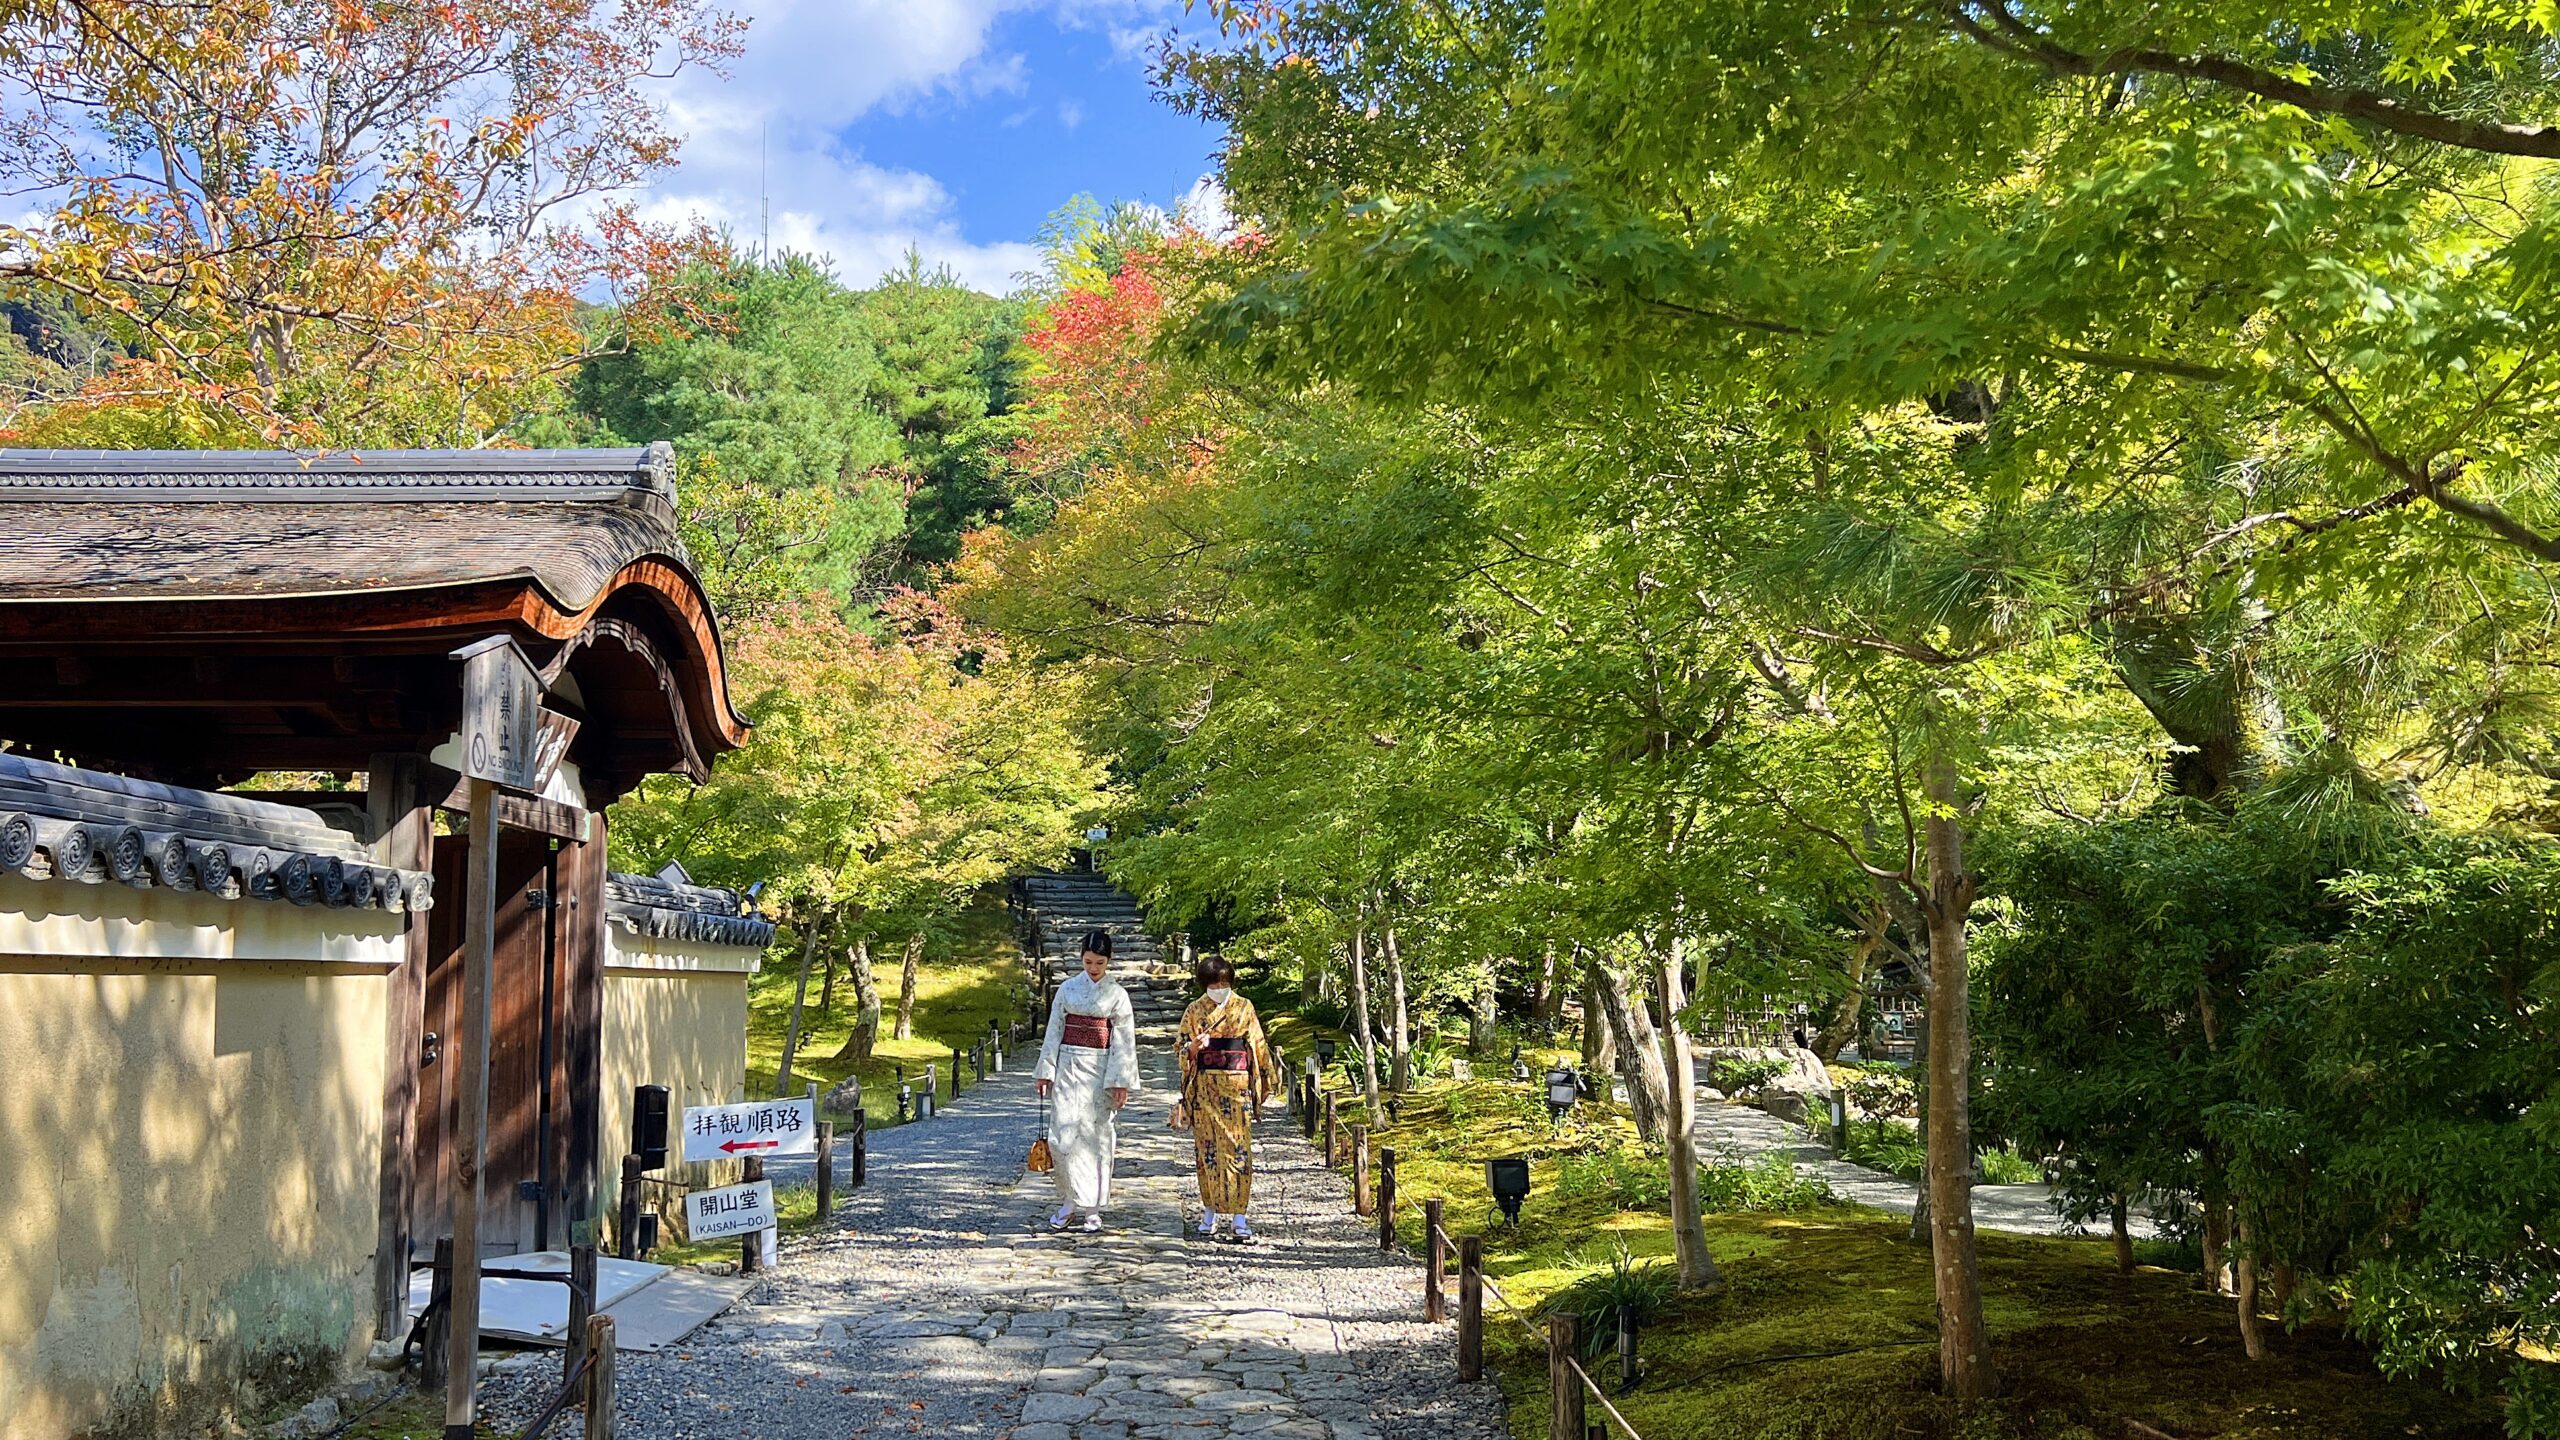 日本京都7日20座經典寺院朝聖與參拜！細訴7日徒步搭配大眾運輸交通工具的自助旅行攻略，另外還有美食食事處與周邊順遊行程推薦！ @。CJ夫人。